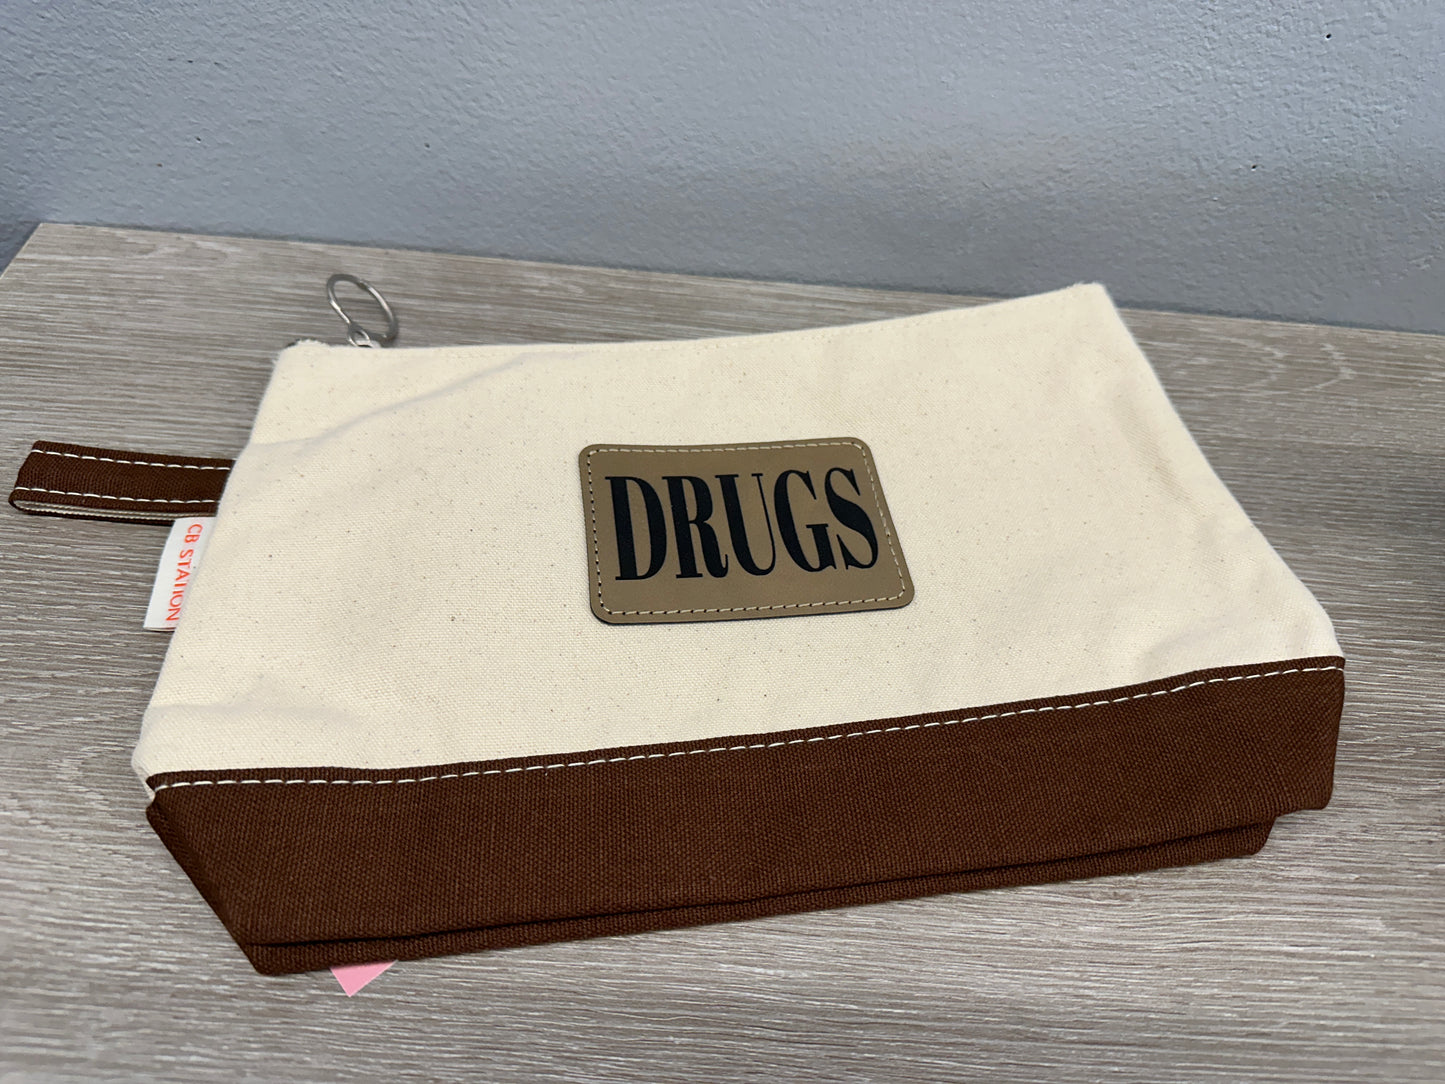 Drugs Cosmetic Bag